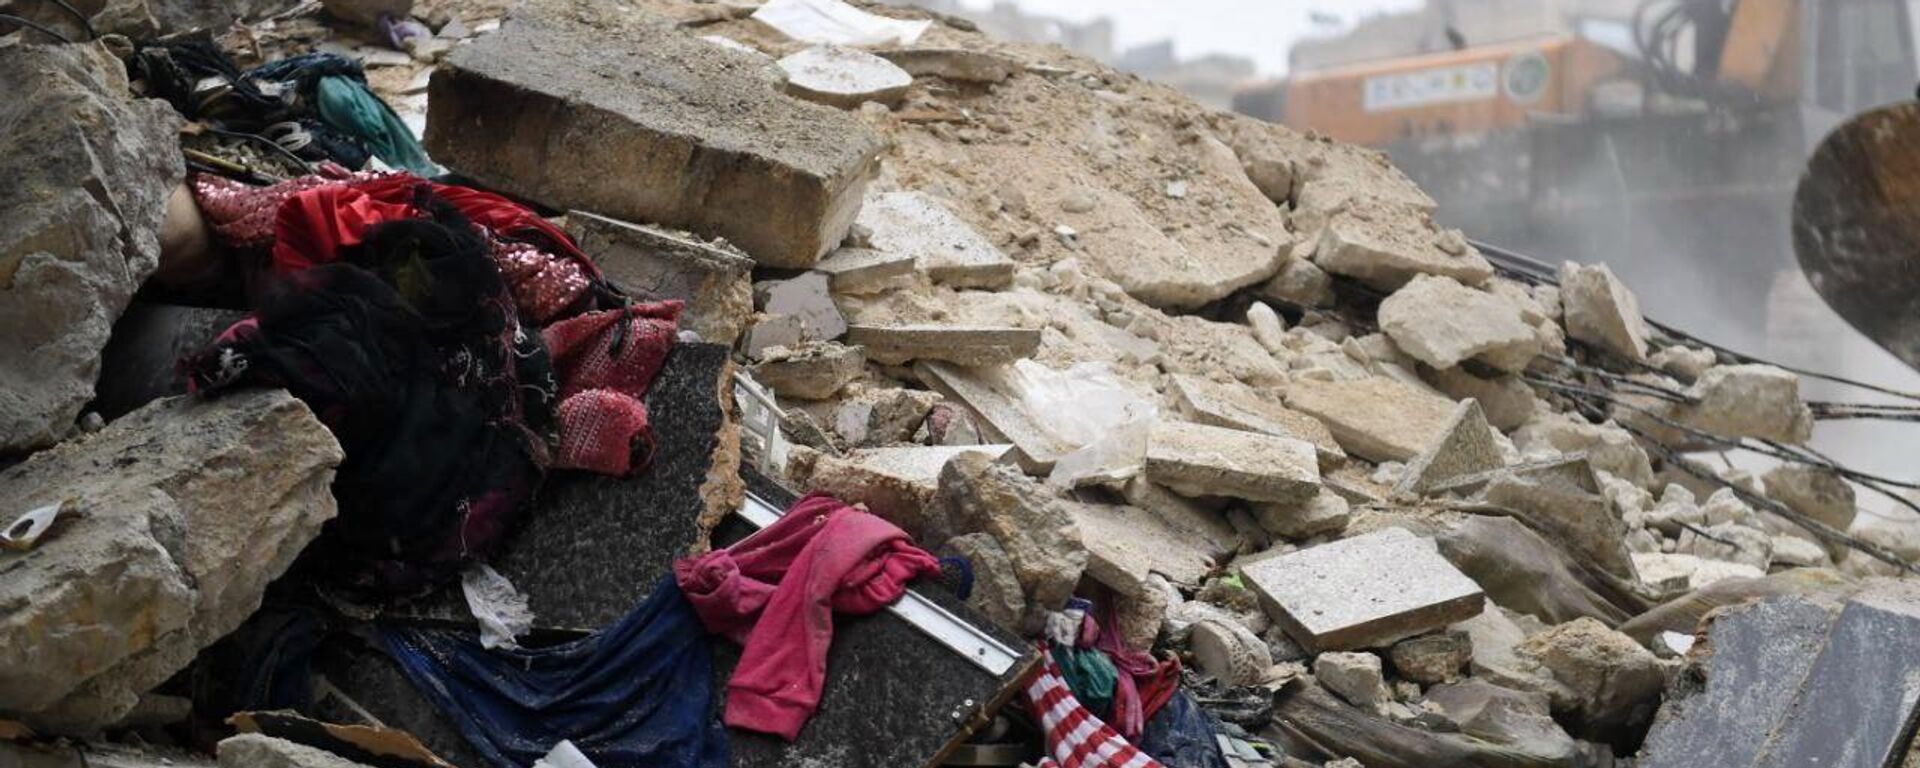 Pertences de moradores de uma casa em Aleppo, na Síria, destruída pelos terremotos que atingiram o país - Sputnik Brasil, 1920, 13.02.2023